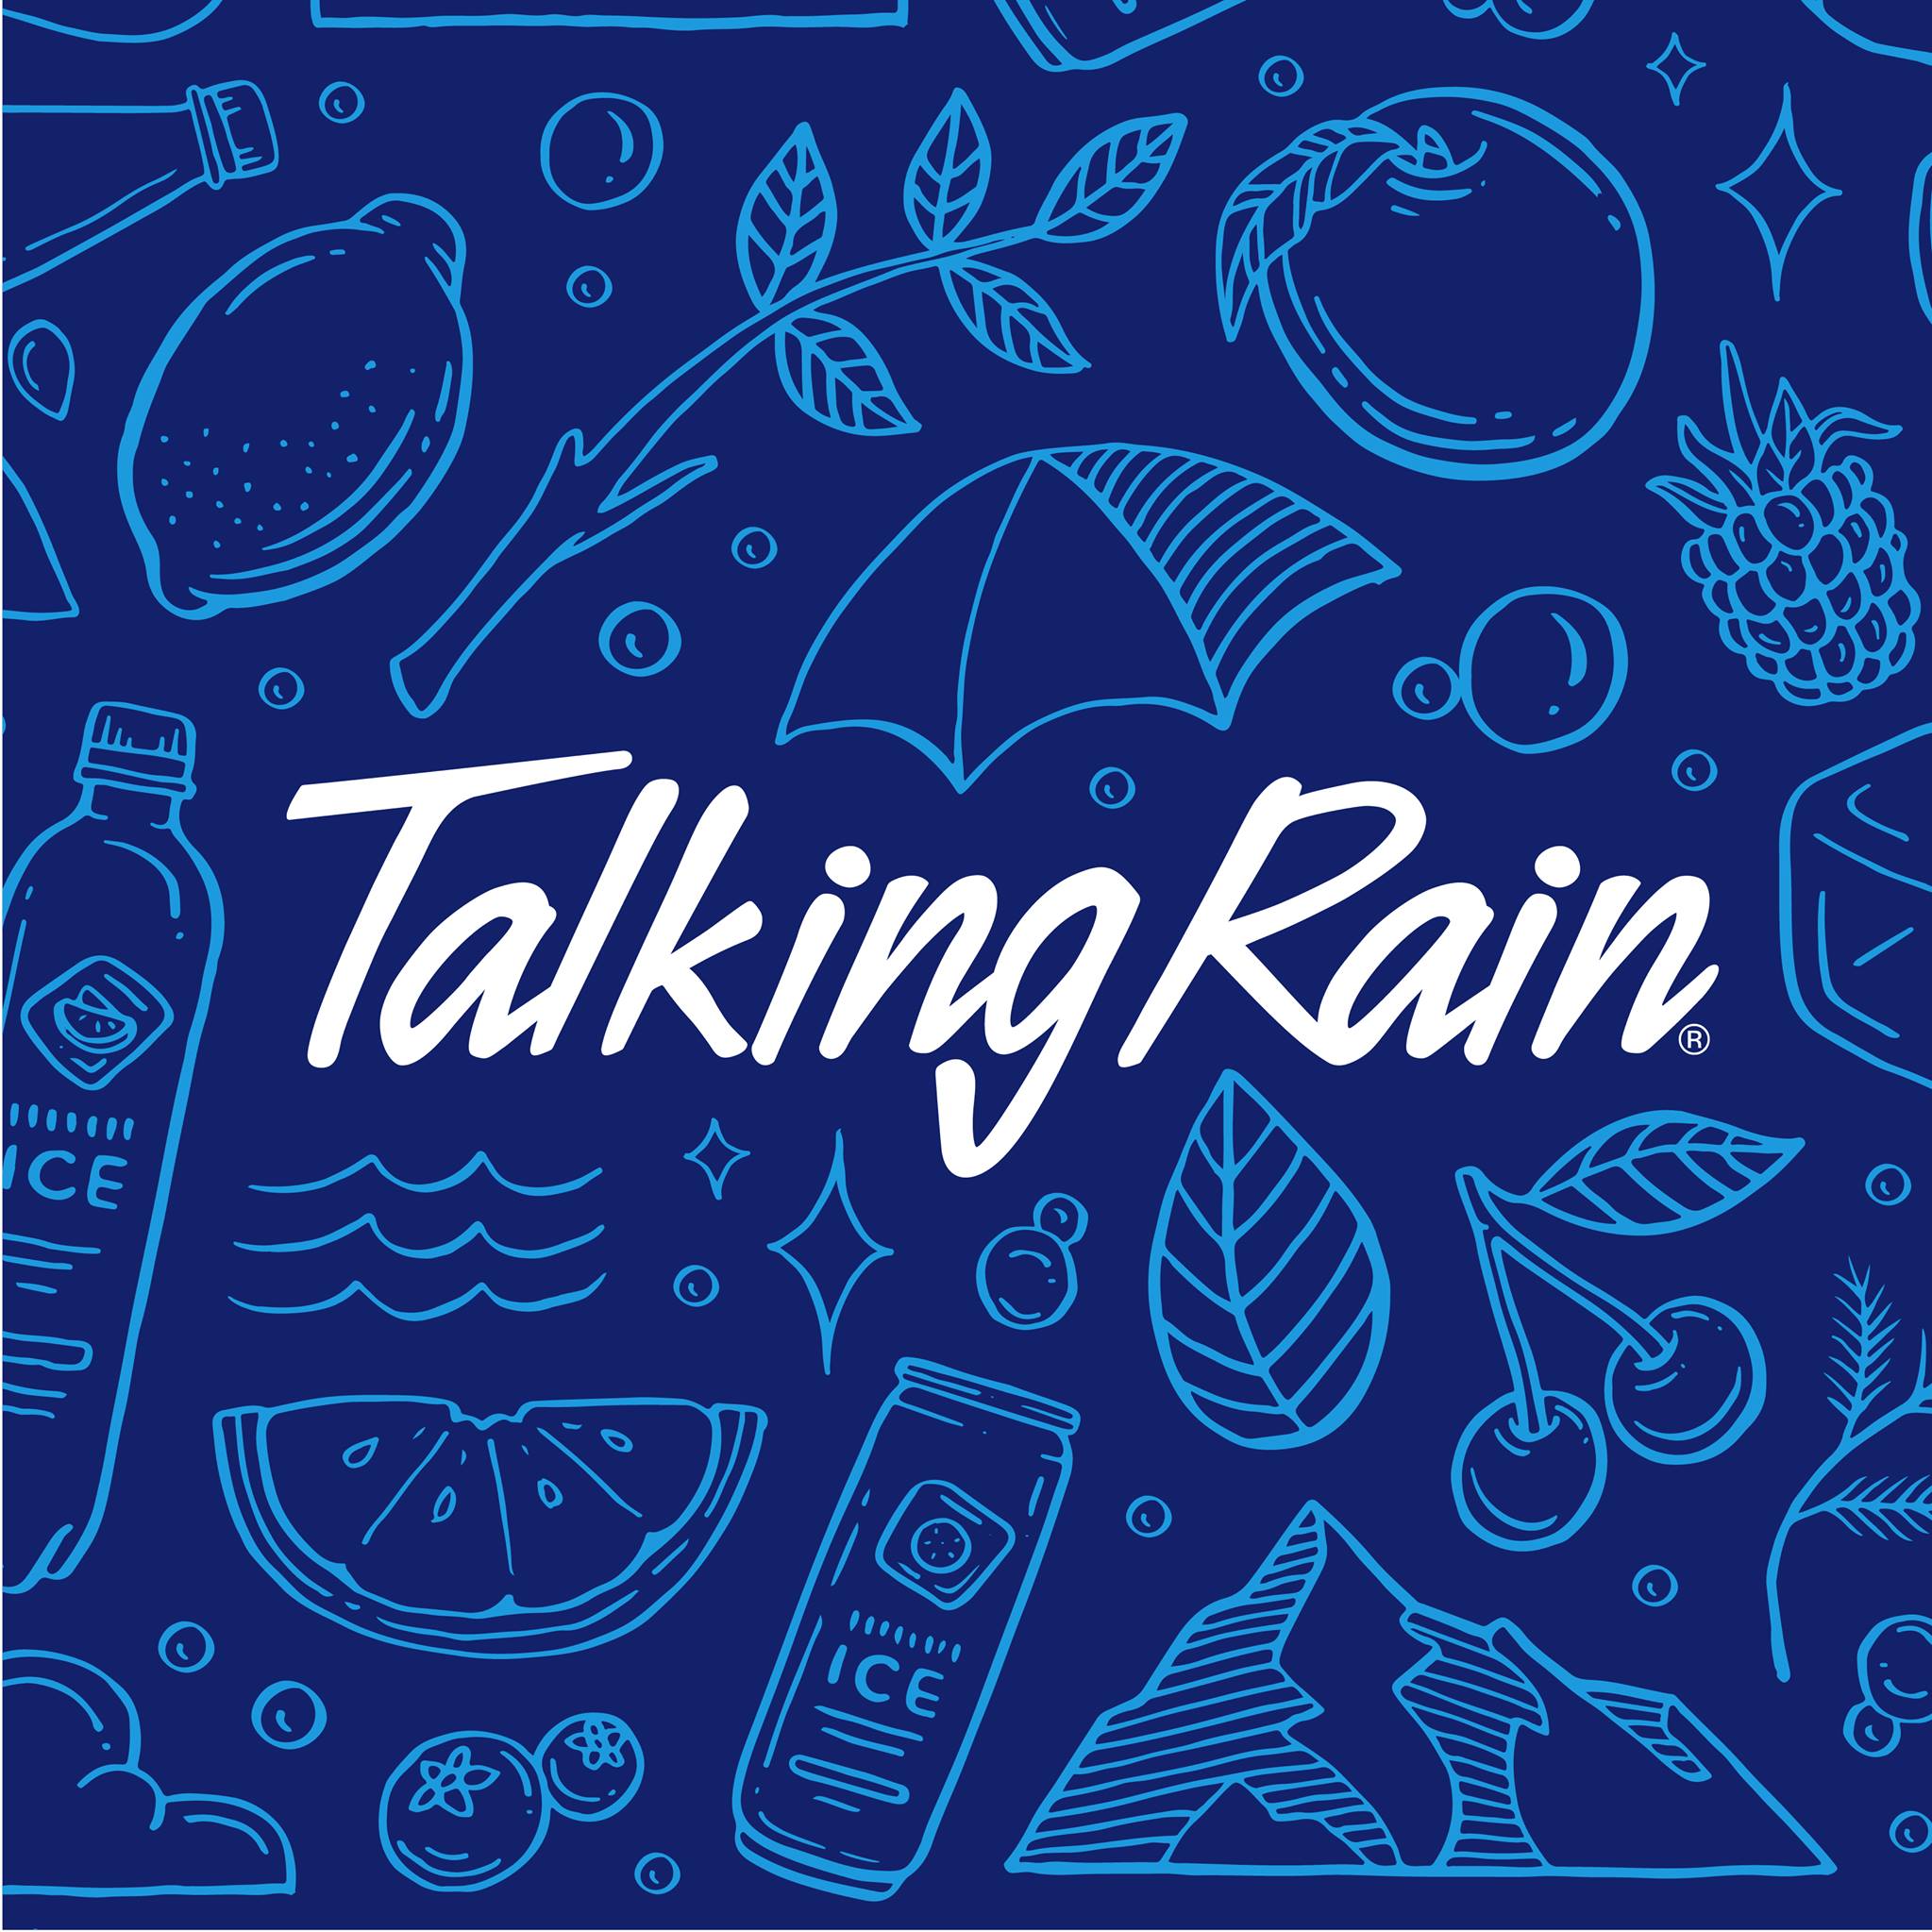 Talking Rain